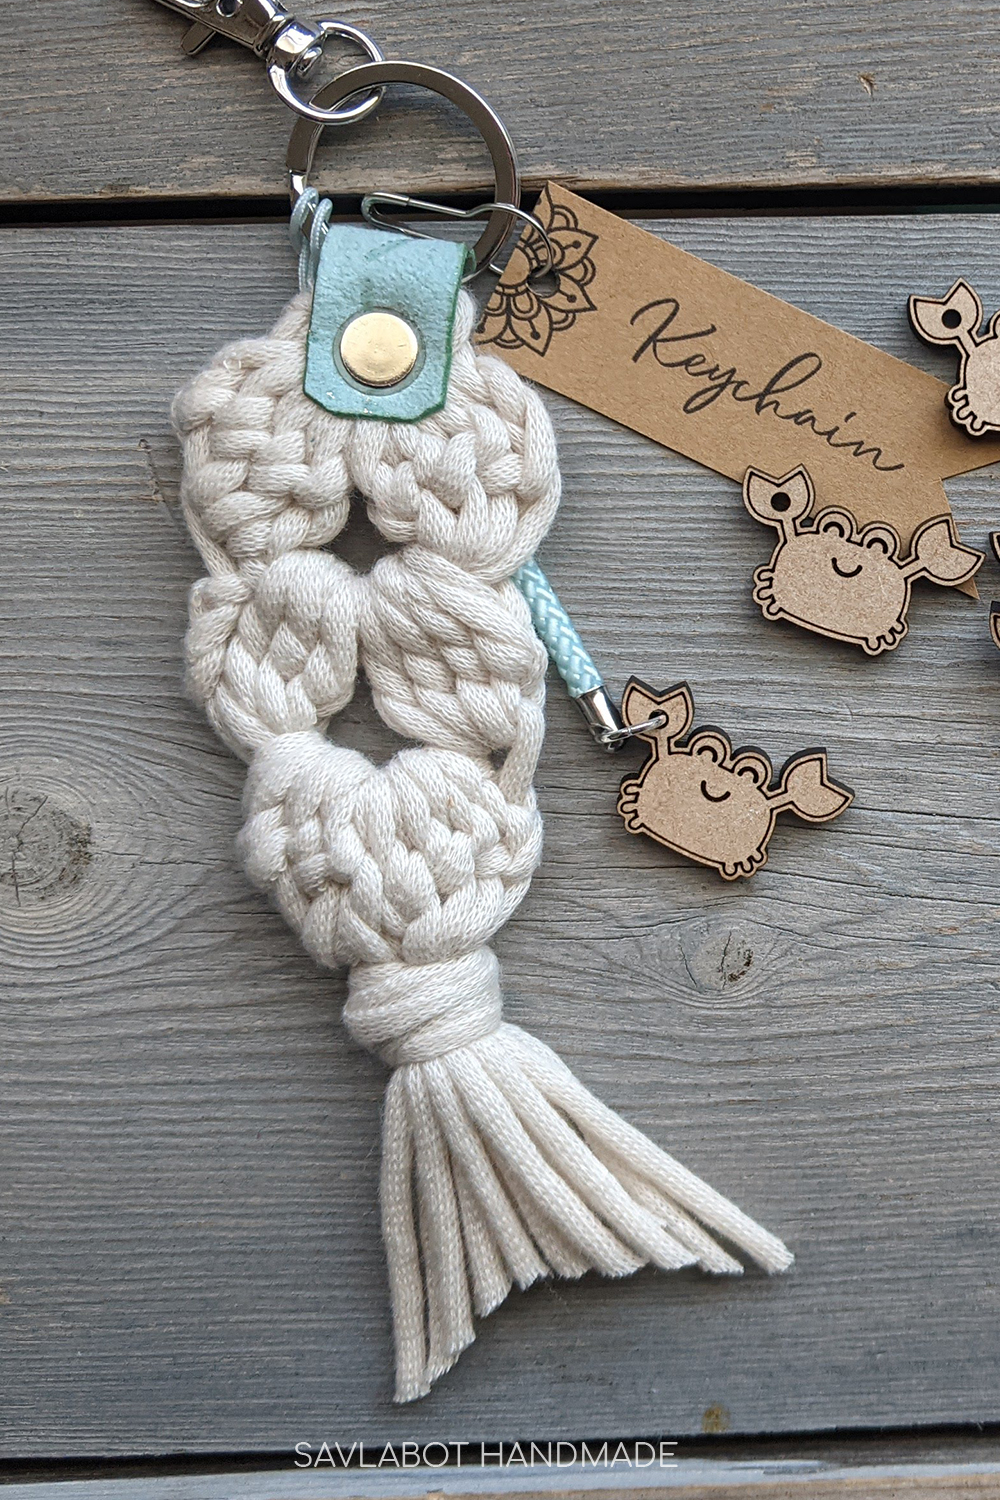 20 Super Cute Summer Crochet Ideas